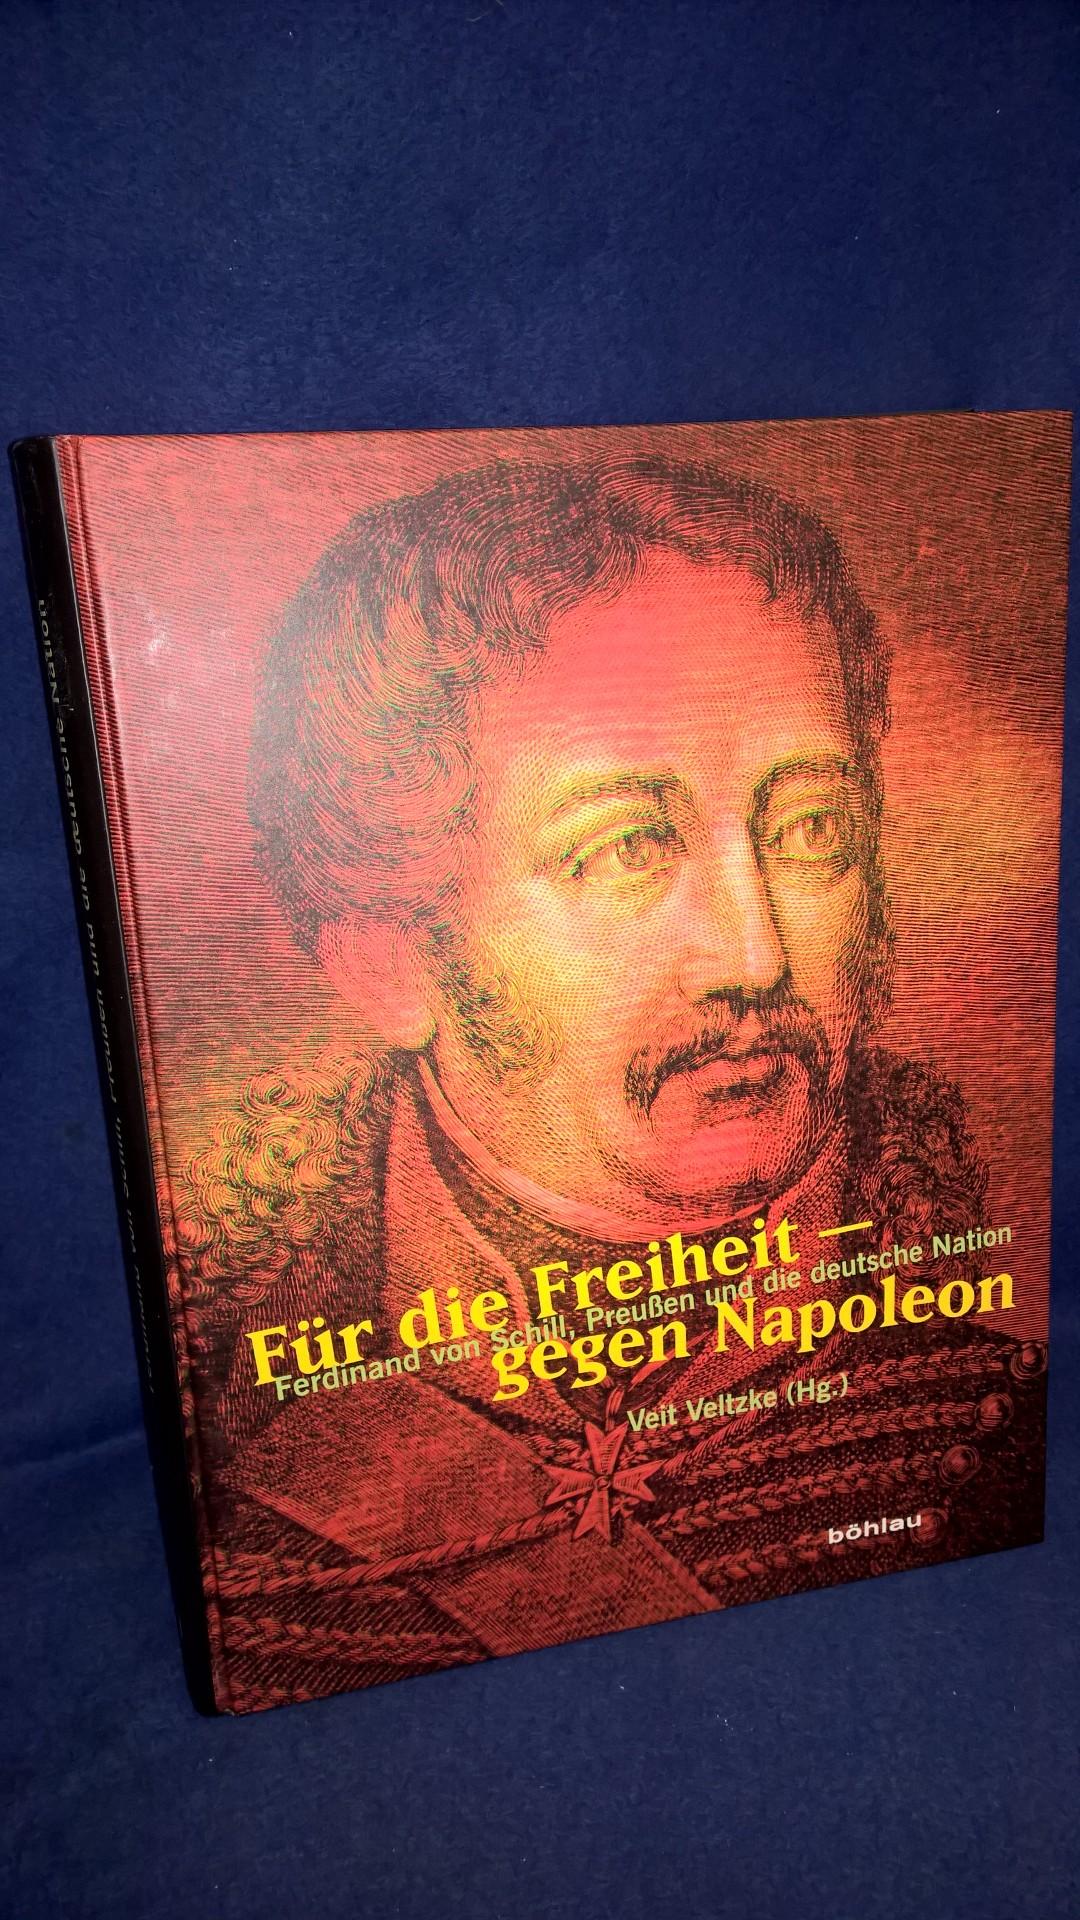 Für die Freiheit - Gegen Napoleon: Ferdinand von Schill, Preußen und die deutsche Nation.